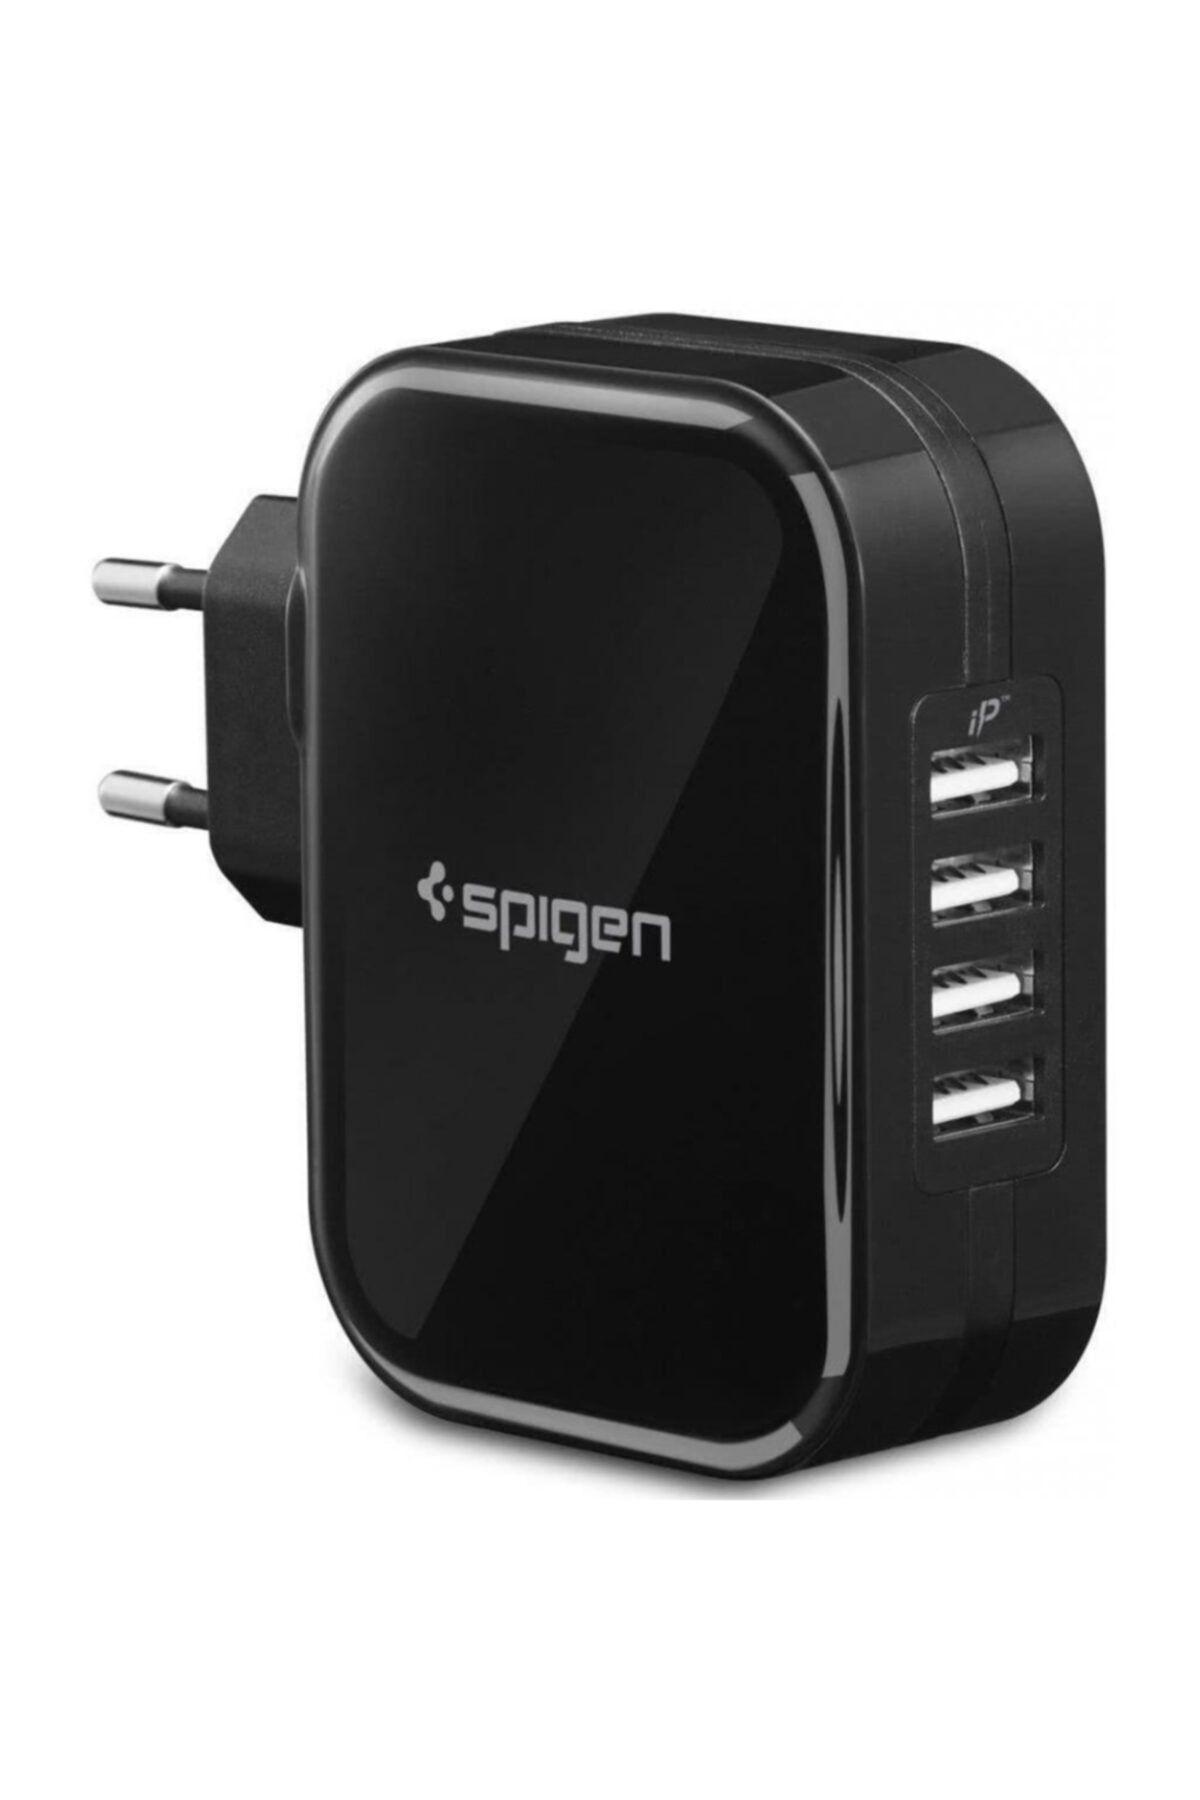 Spigen Essential 34W Hızlı Şarj Cihazı 4 Port USB (5V 6.8A) iP  Duvar Şarjı F401 Black - 000AD23962